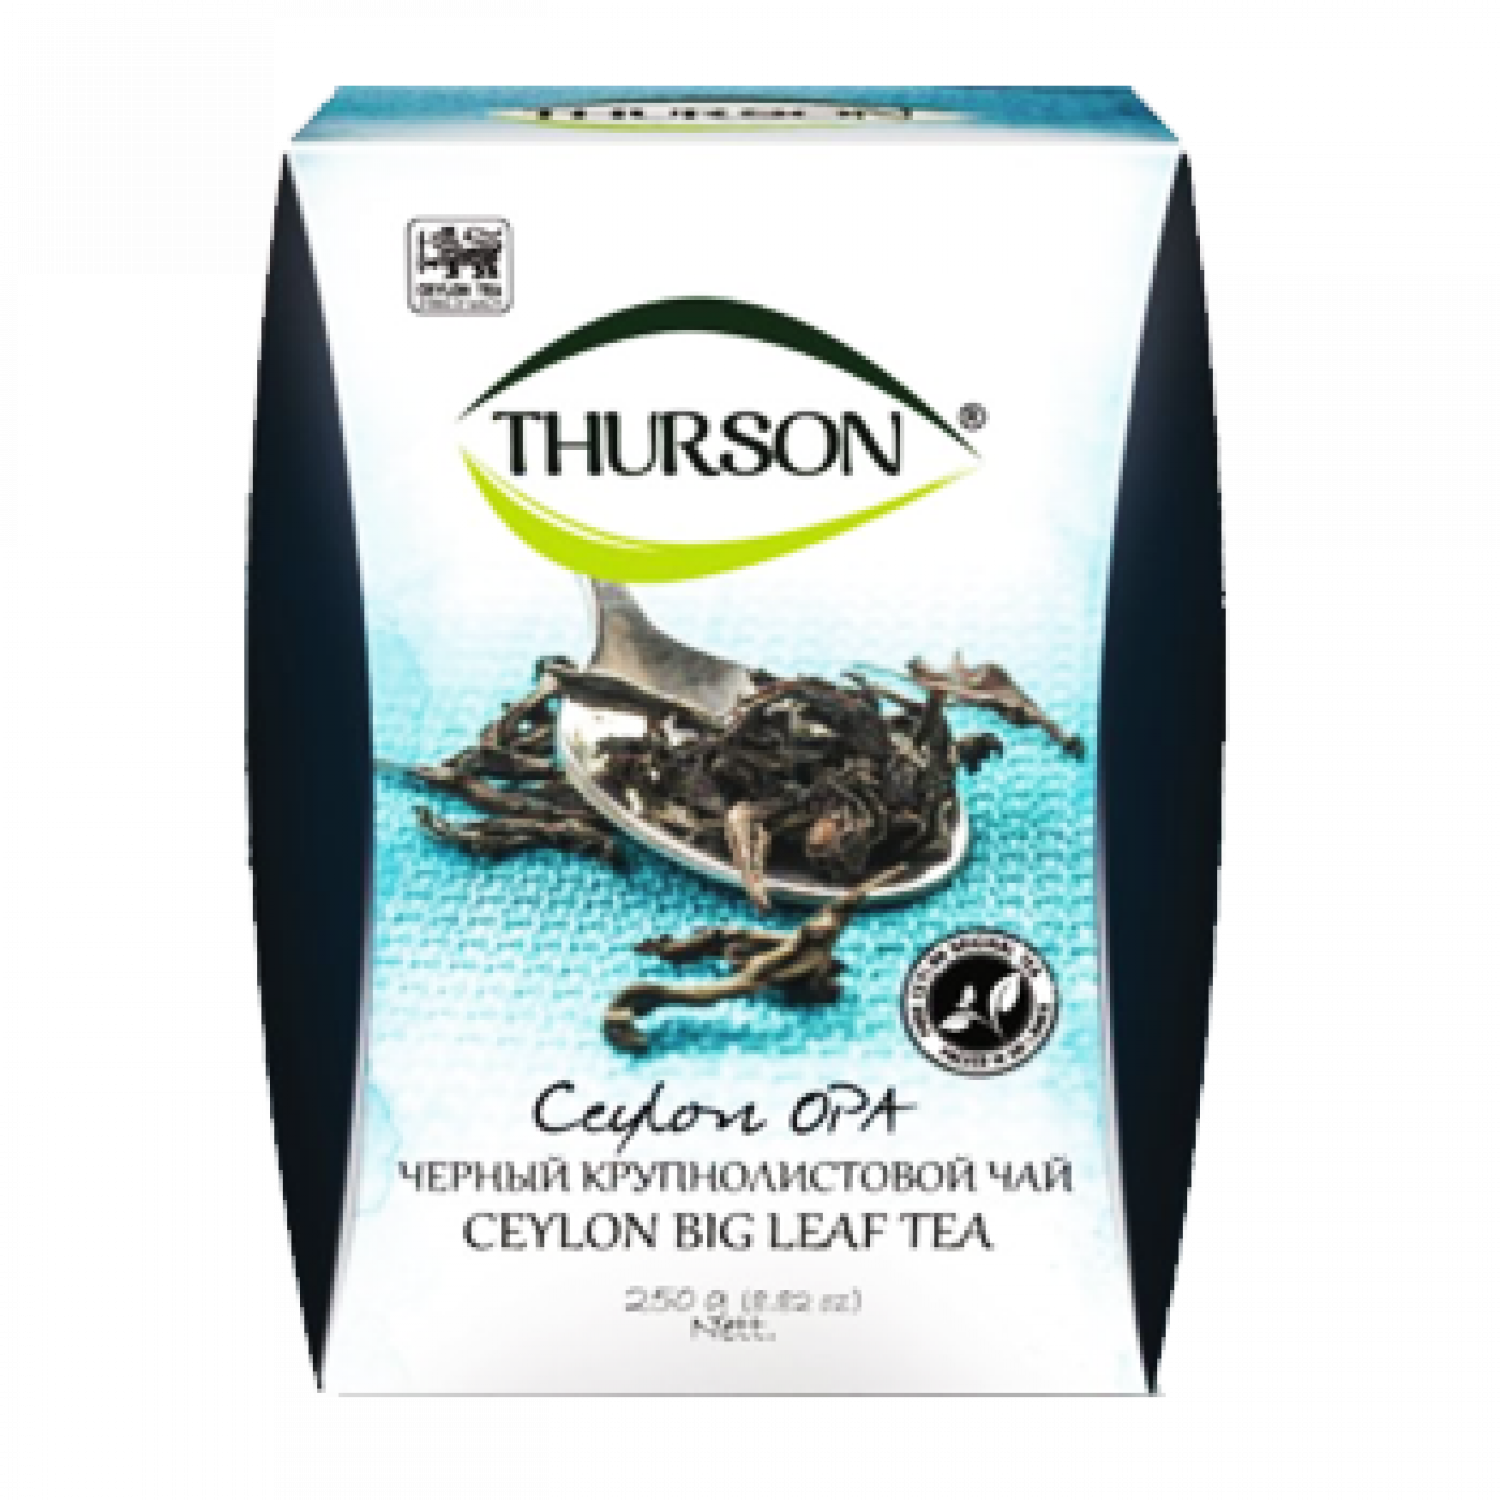 Цейлонский чай из шри ланки. Цейлонский чай из Шри Ланки Thurson. Чай черный крупнолистовой Шри Ланка. Зеленый чай Thurson. Чай Турсон зеленый.